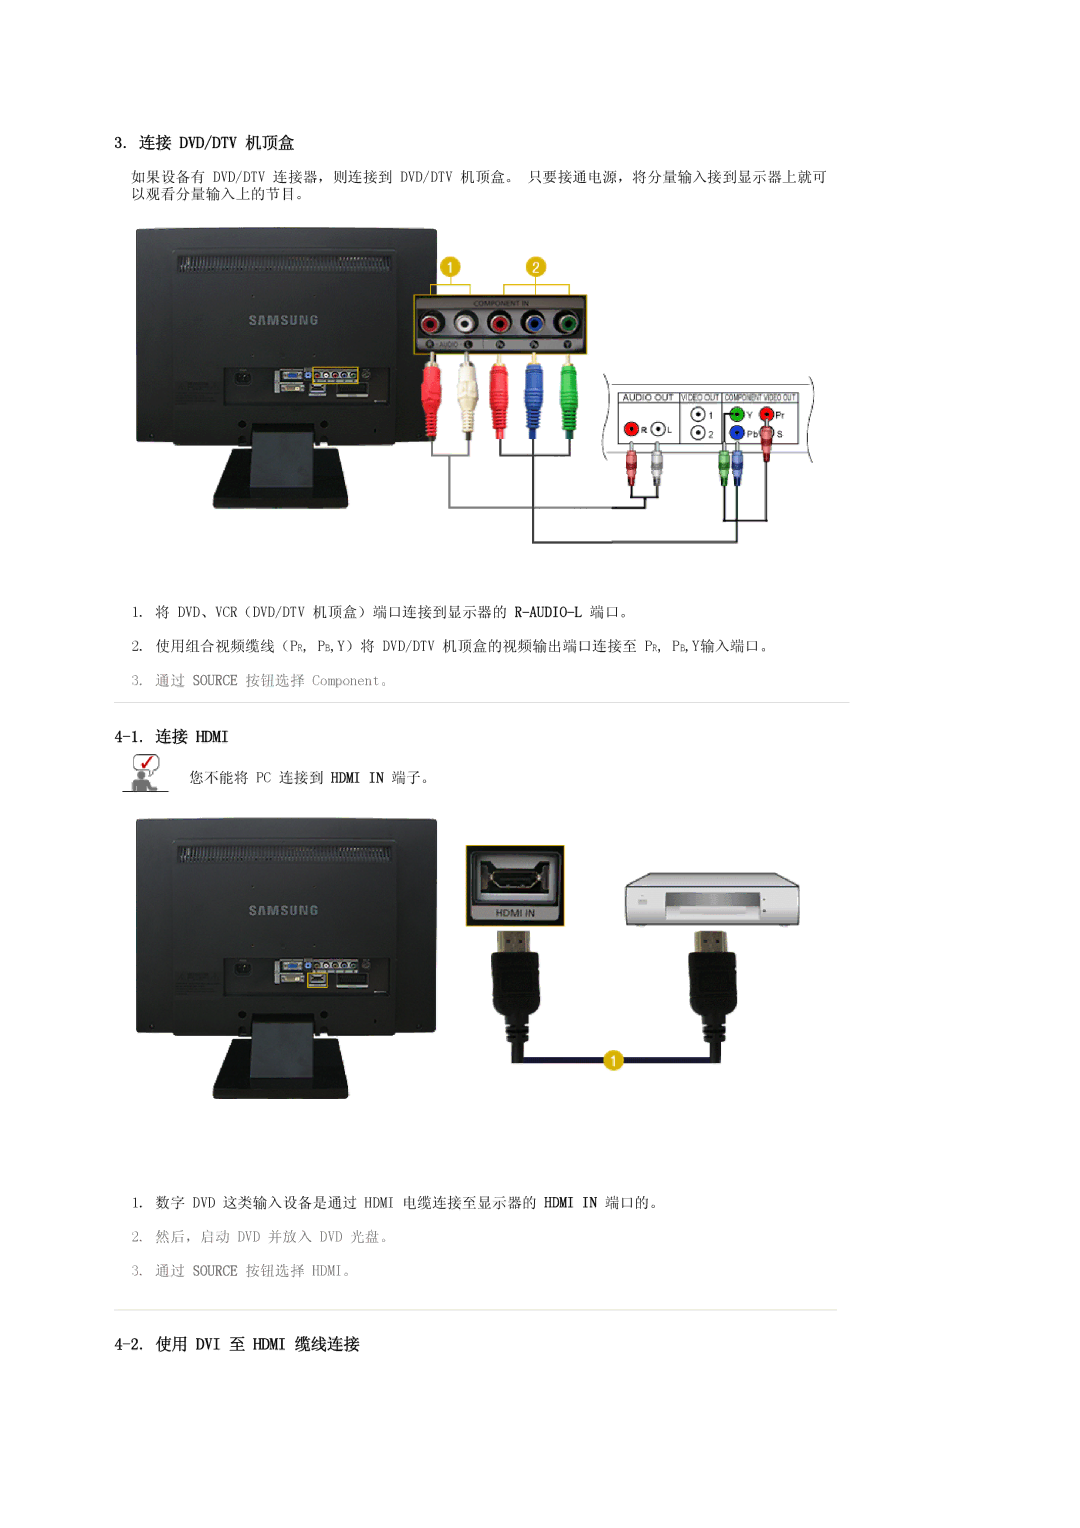 Samsung LS22CRASB6/EDC, LS22CRASB/EDC manual 连接 Dvd/Dtv 机顶盒, 连接 Hdmi, 使用 DVI 至 Hdmi 缆线连接 